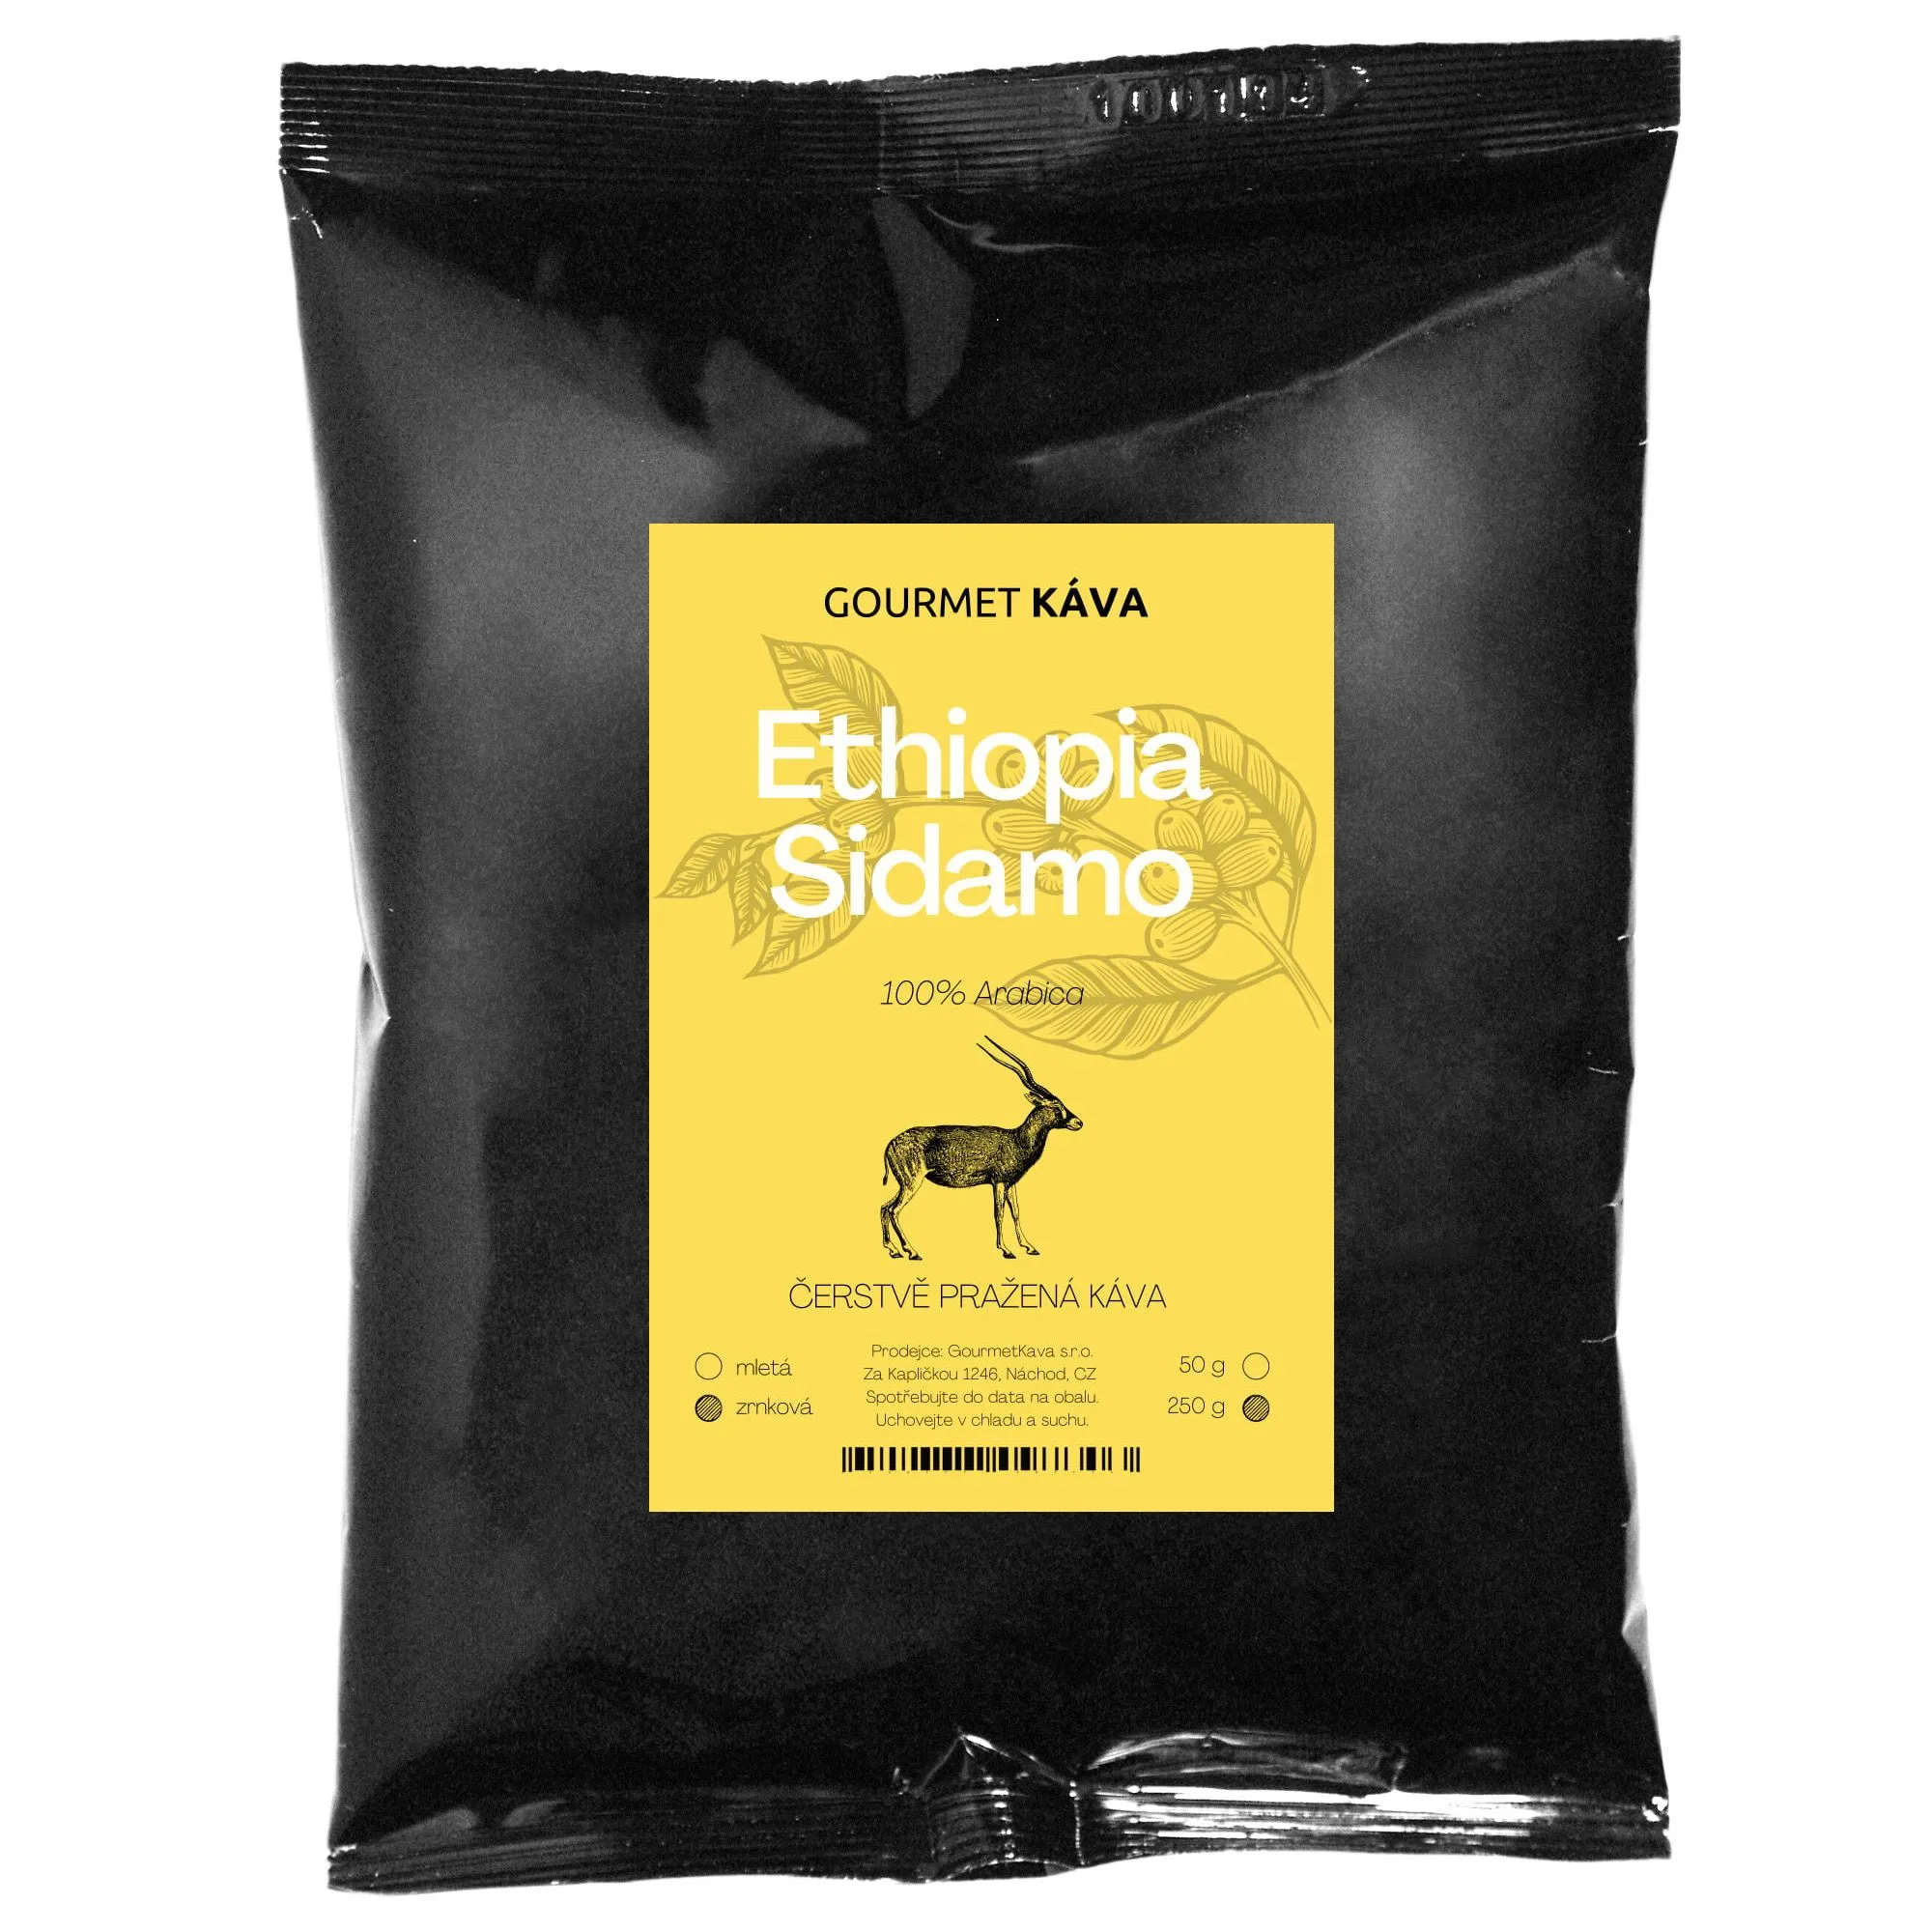 Káva Etiopie Sidamo 250g,Etiopie Sidamo, zrnková káva arabica